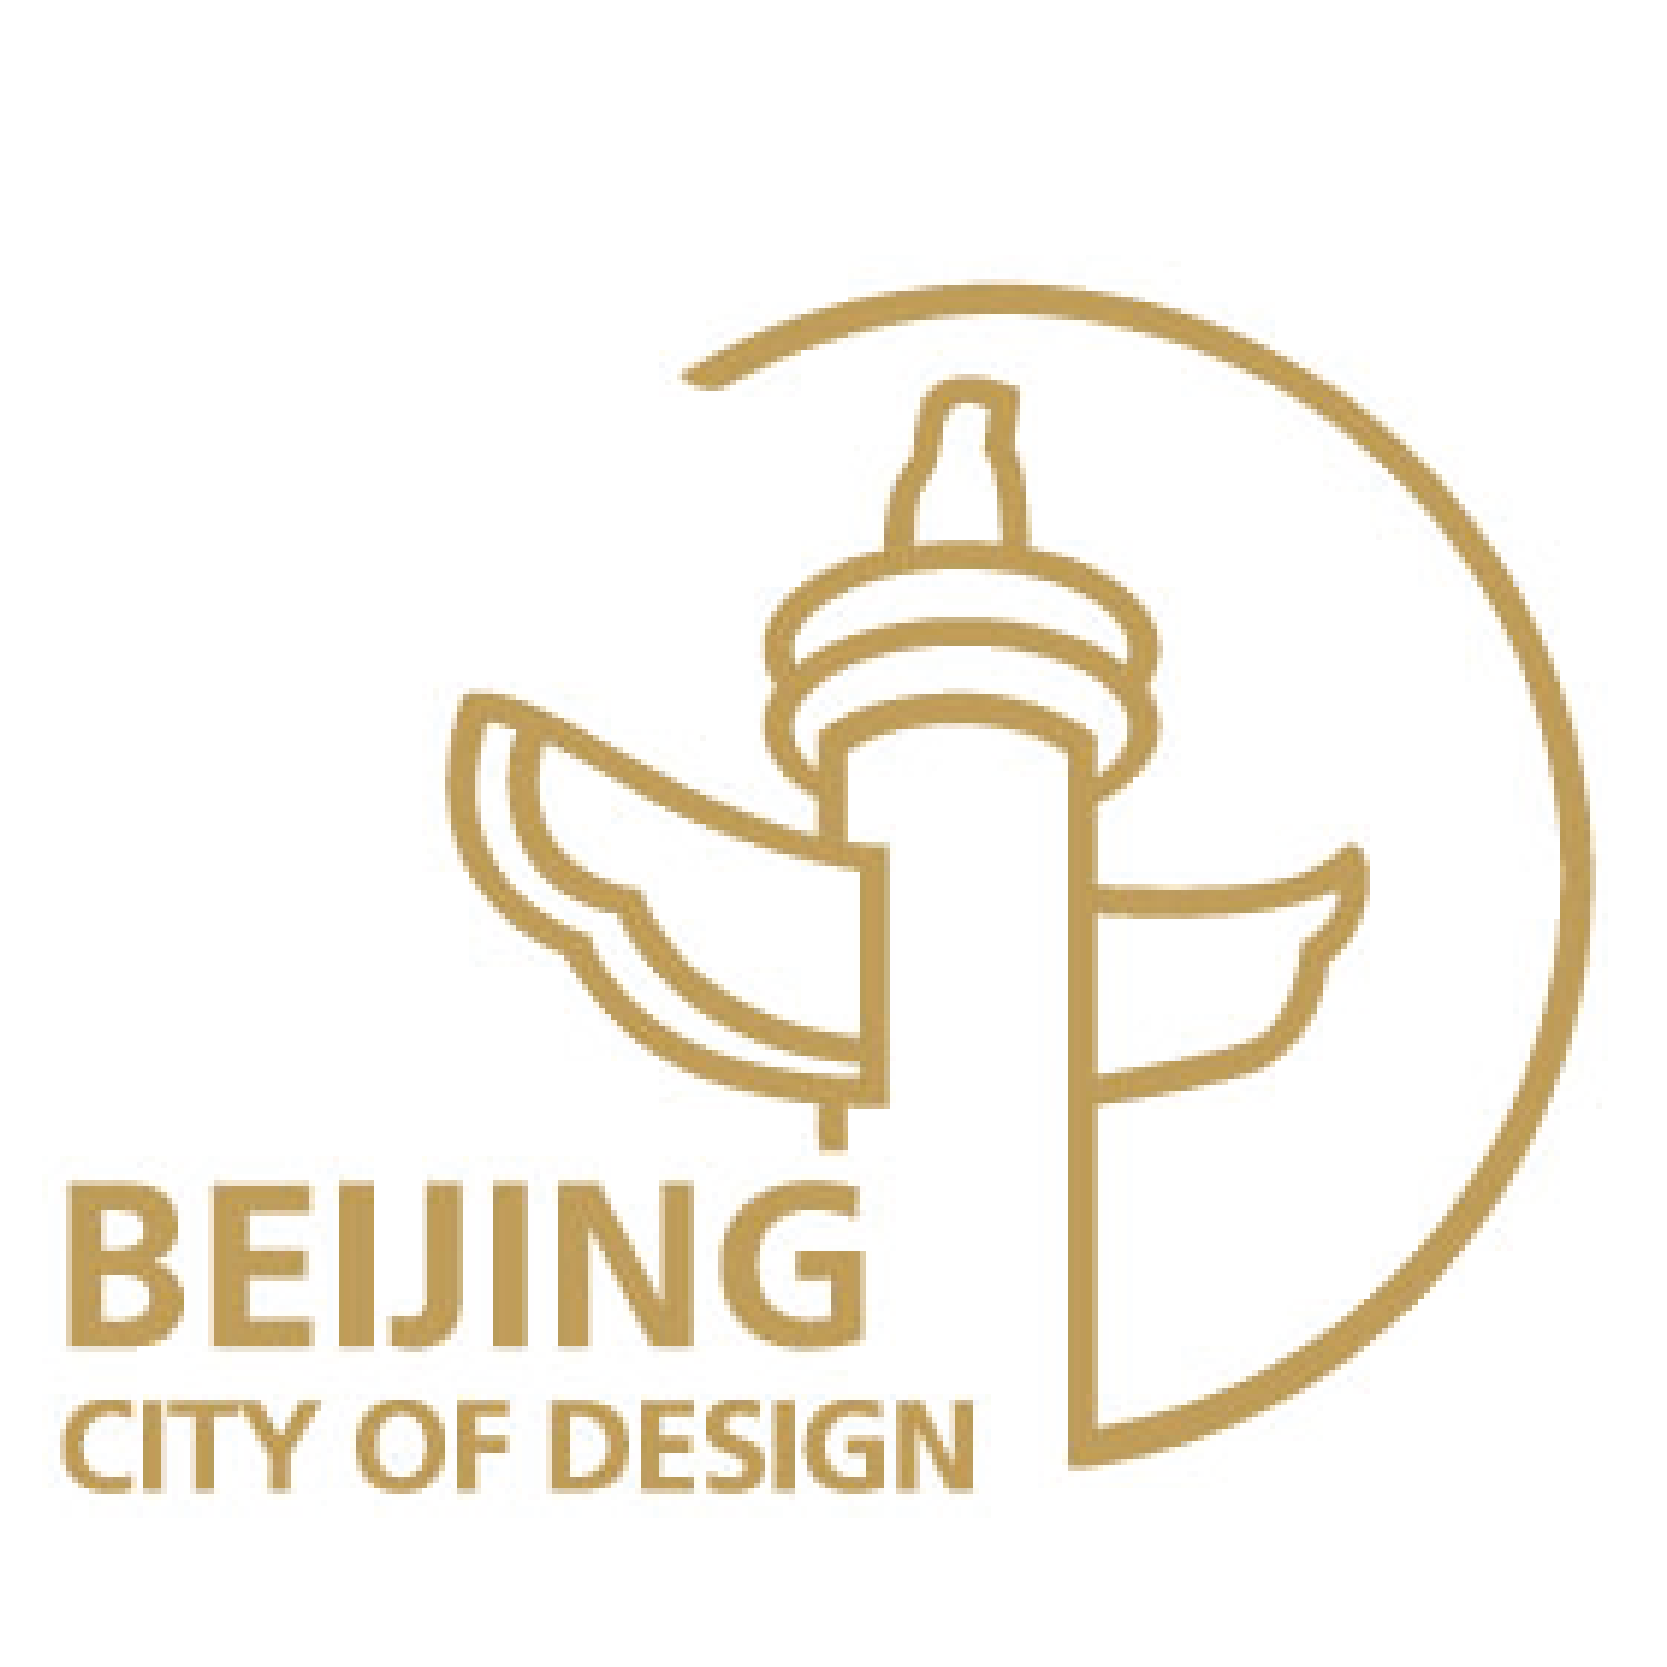 Beijing, City of Design